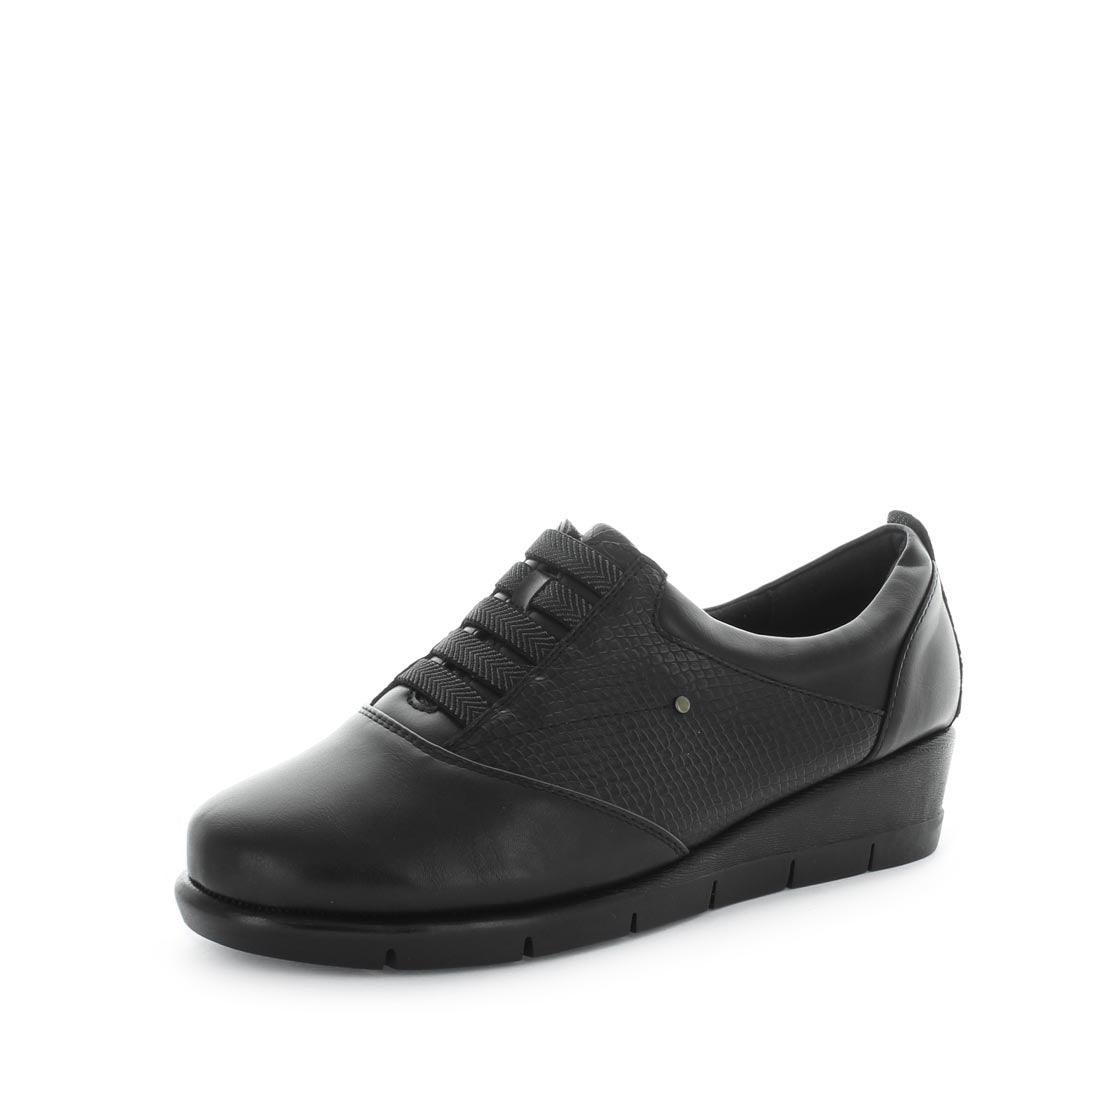 SIERRA by WILDE - iShoes - Sale, Sale: Women's Sale, Women's Shoes, Women's Shoes: Wedges, Women's Shoes: Women's Work Shoes - FOOTWEAR-FOOTWEAR